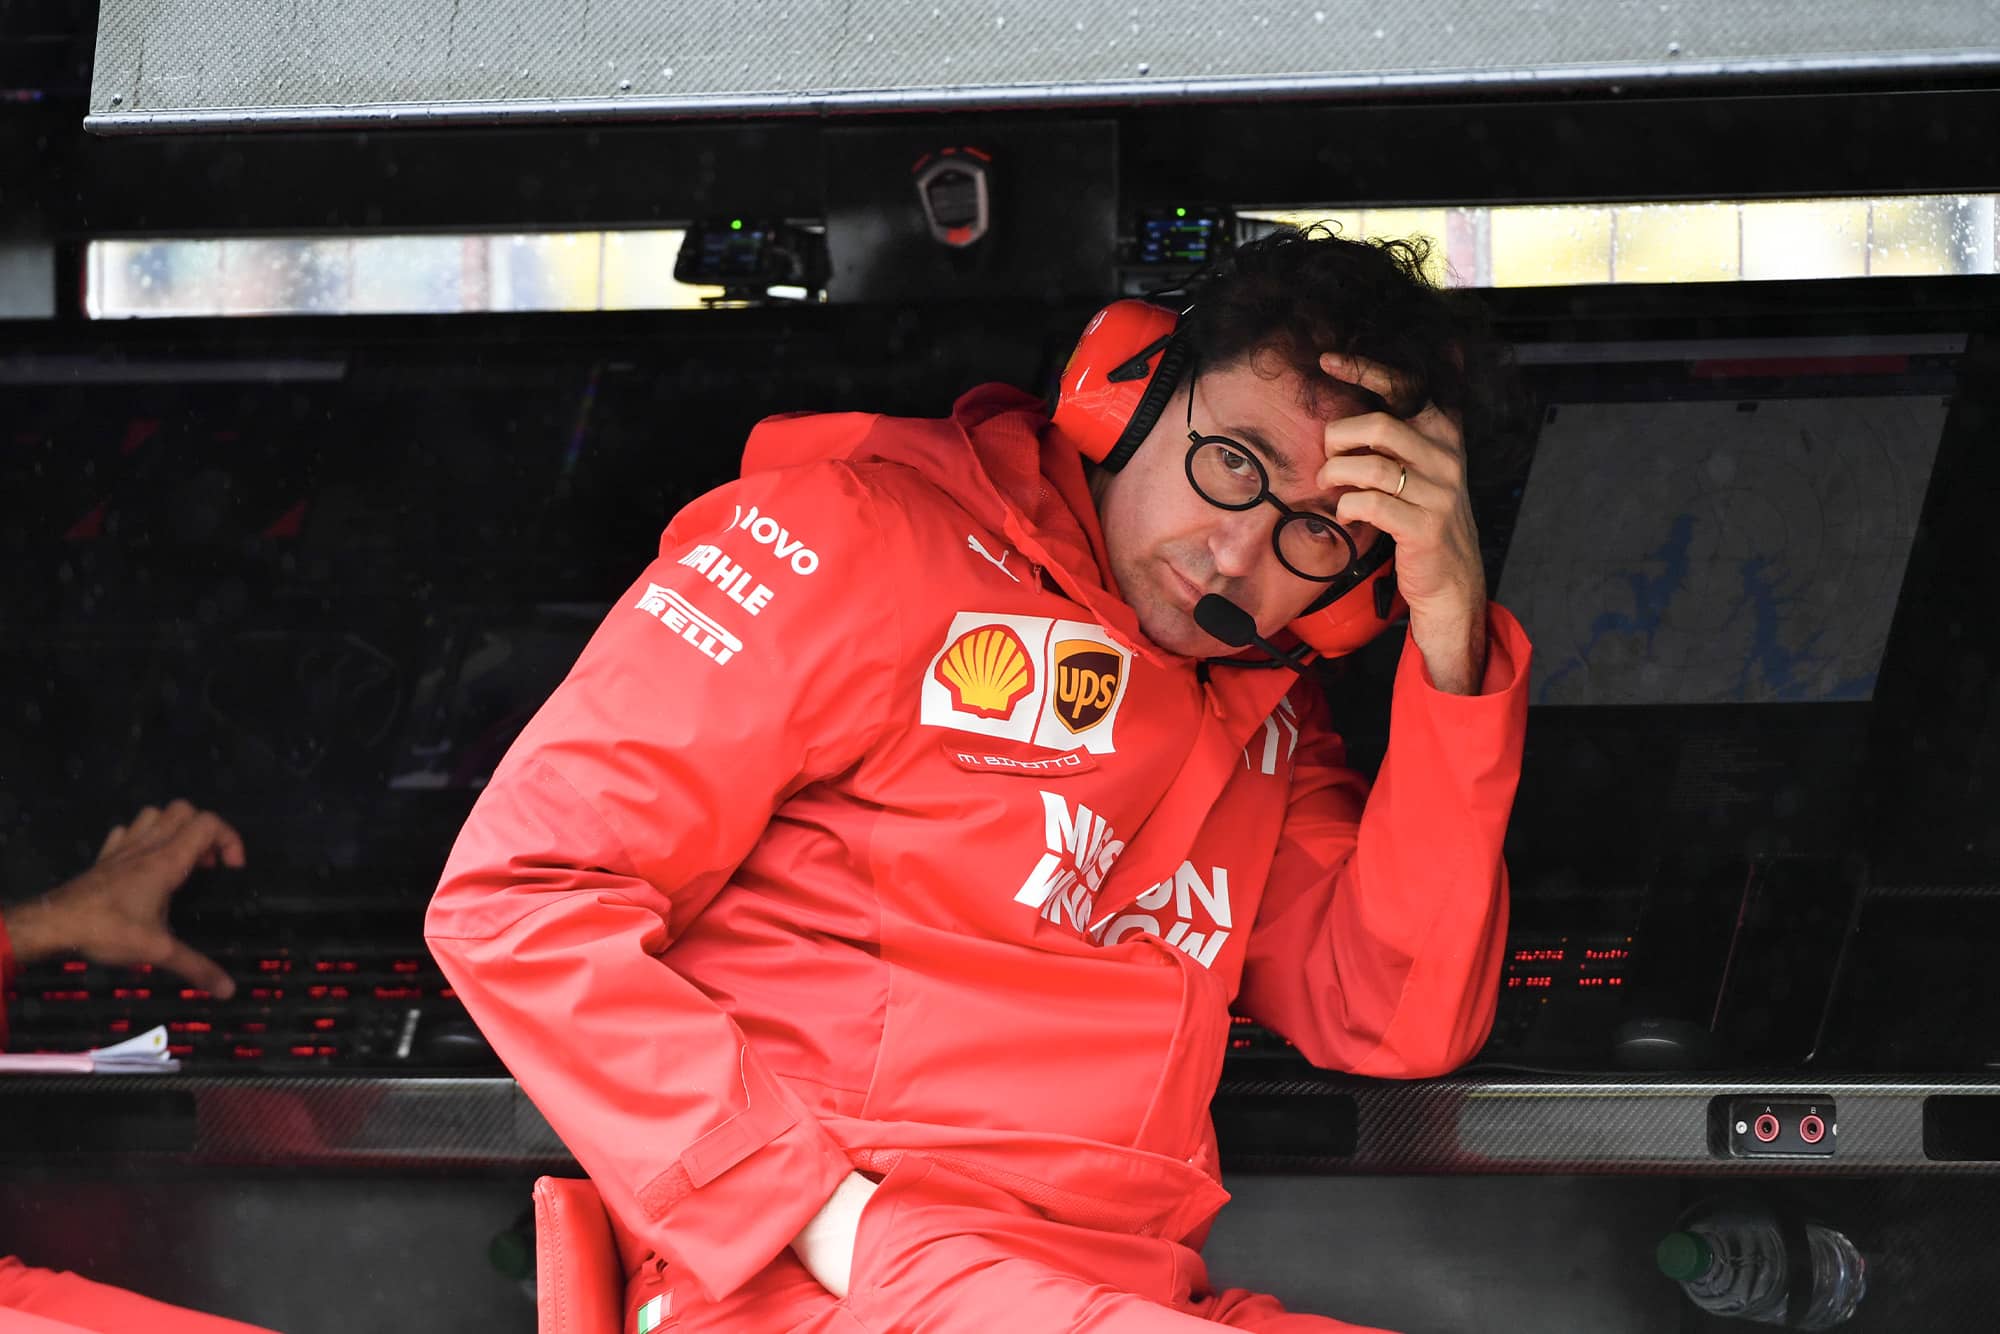 Mattia Binotto during the 2019 Brazilian Grand Prix weekend